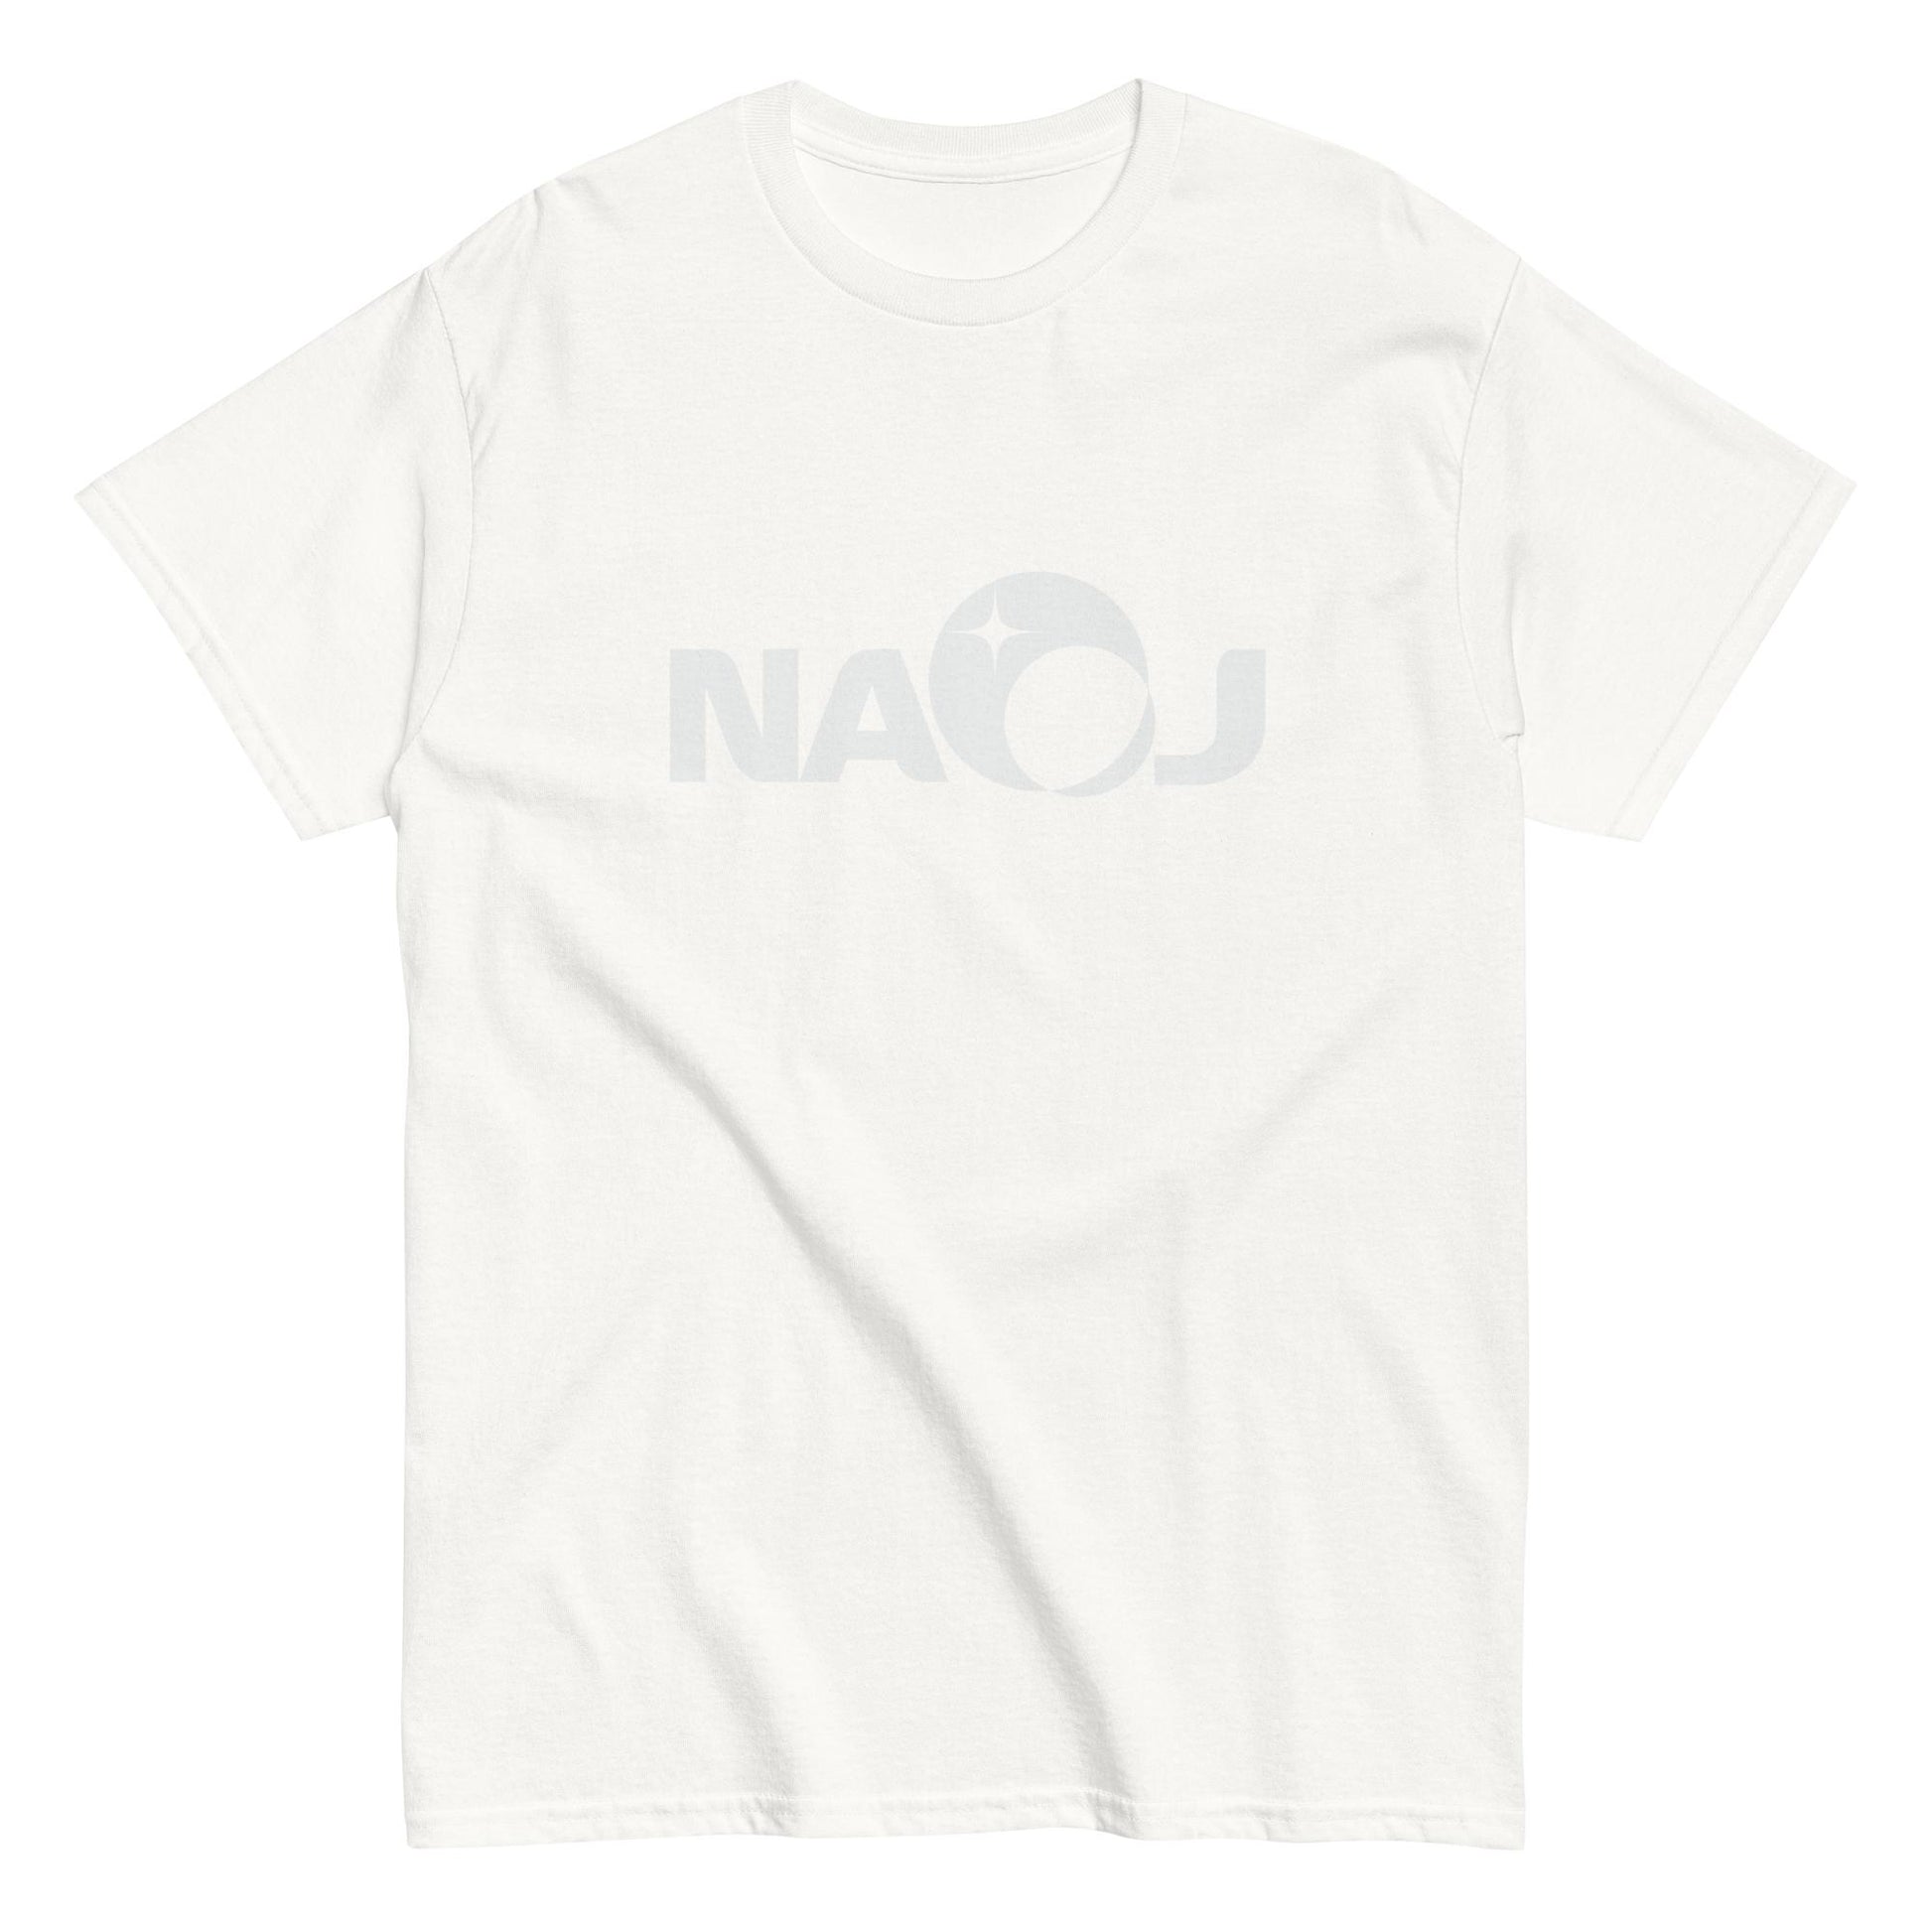 国立天文台 NAOJ ロゴマーク ヘビーウェイト Tシャツ ホワイト x ホワイト S 00